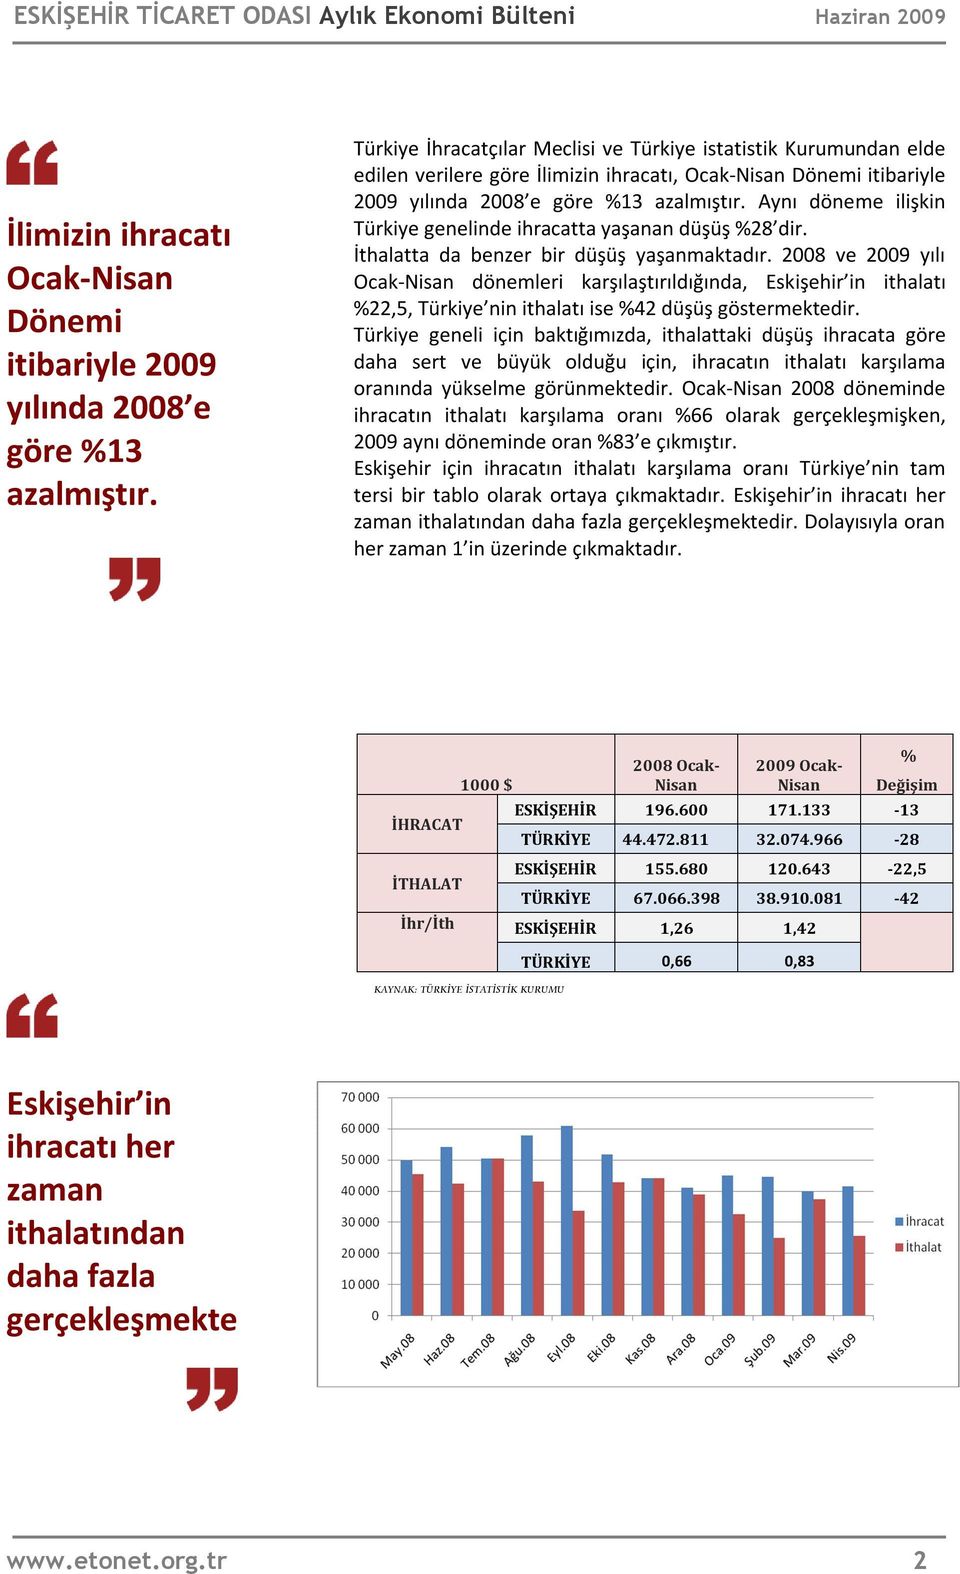 Aynı döneme ilişkin Türkiye genelinde ihracatta yaşanan düşüş %28 dir. İthalatta da benzer bir düşüş yaşanmaktadır.